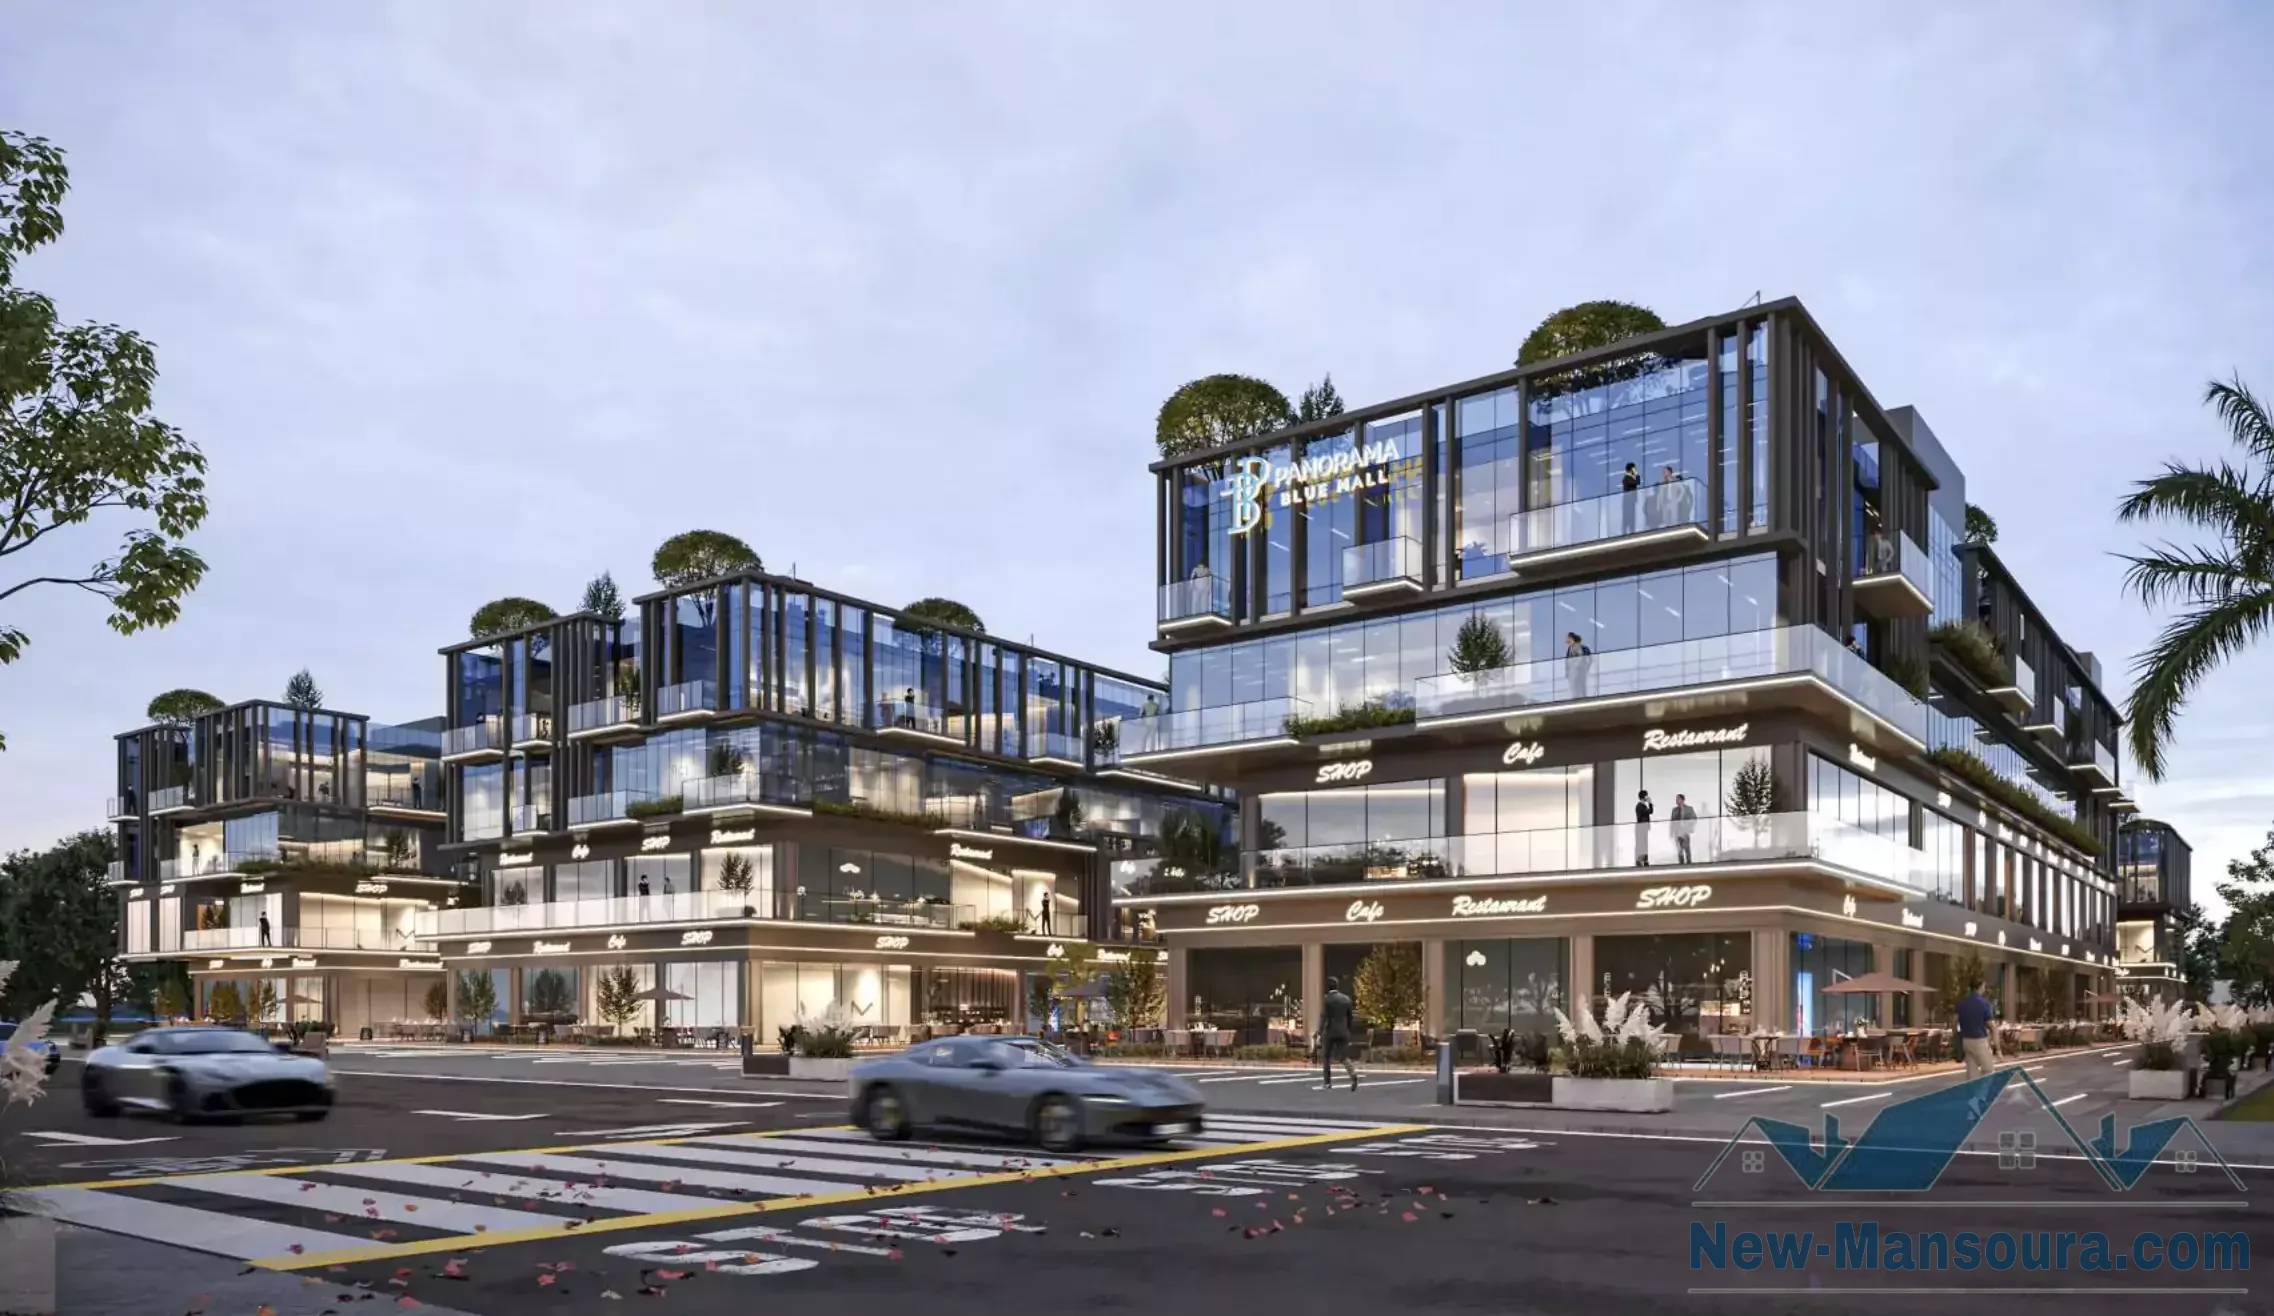 Panorama Blue Mall New Mansoura - Boyot Compound